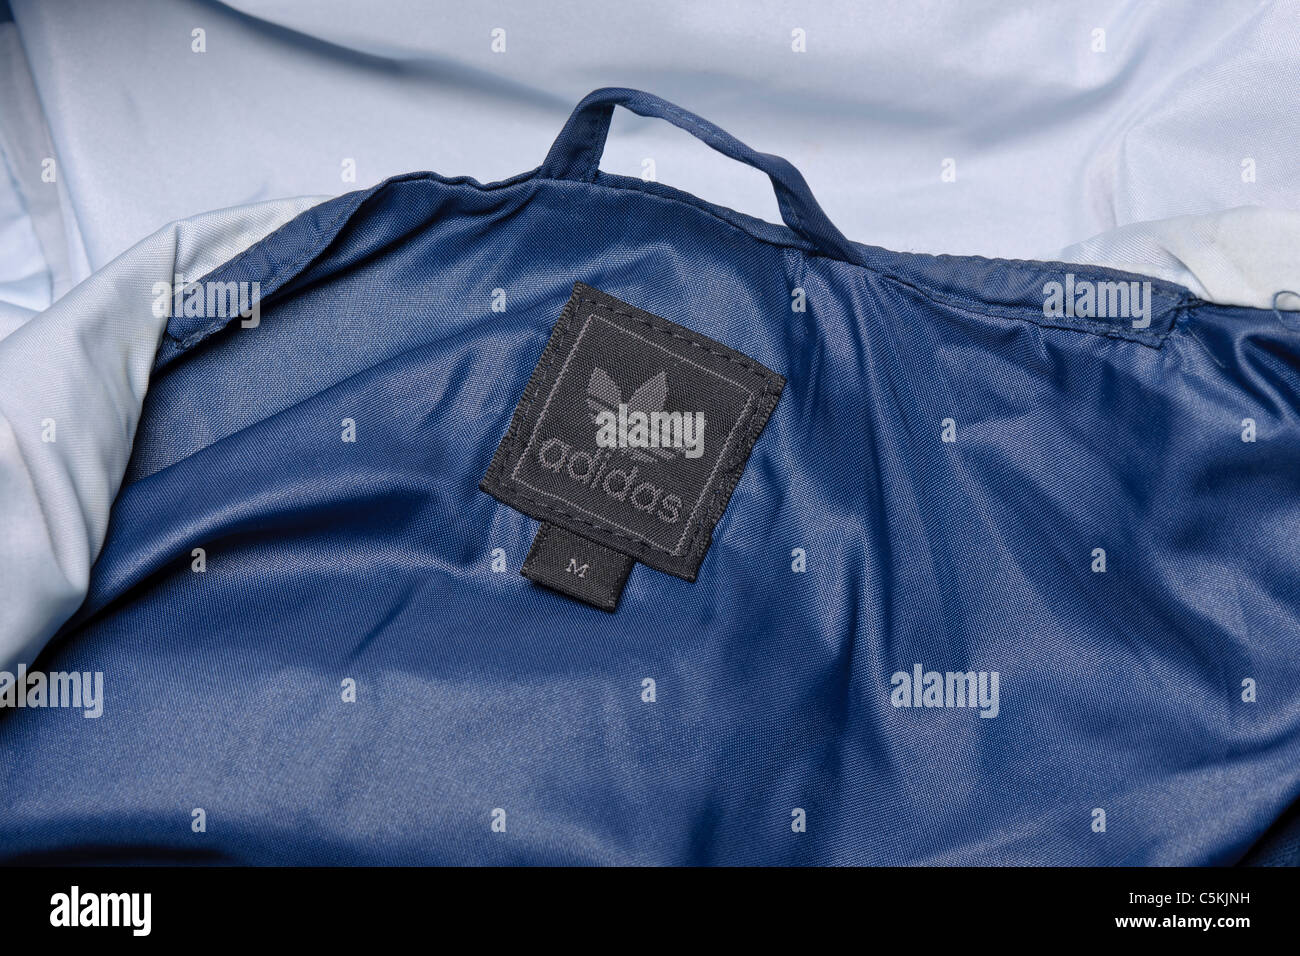 Adidas Marseille reichen Sportbekleidung Windjacke Herren Regenjacke in zweifarbig blau Nylon, mit Kapuze und durchgehendem Reißverschluss. Label-detail Stockfoto